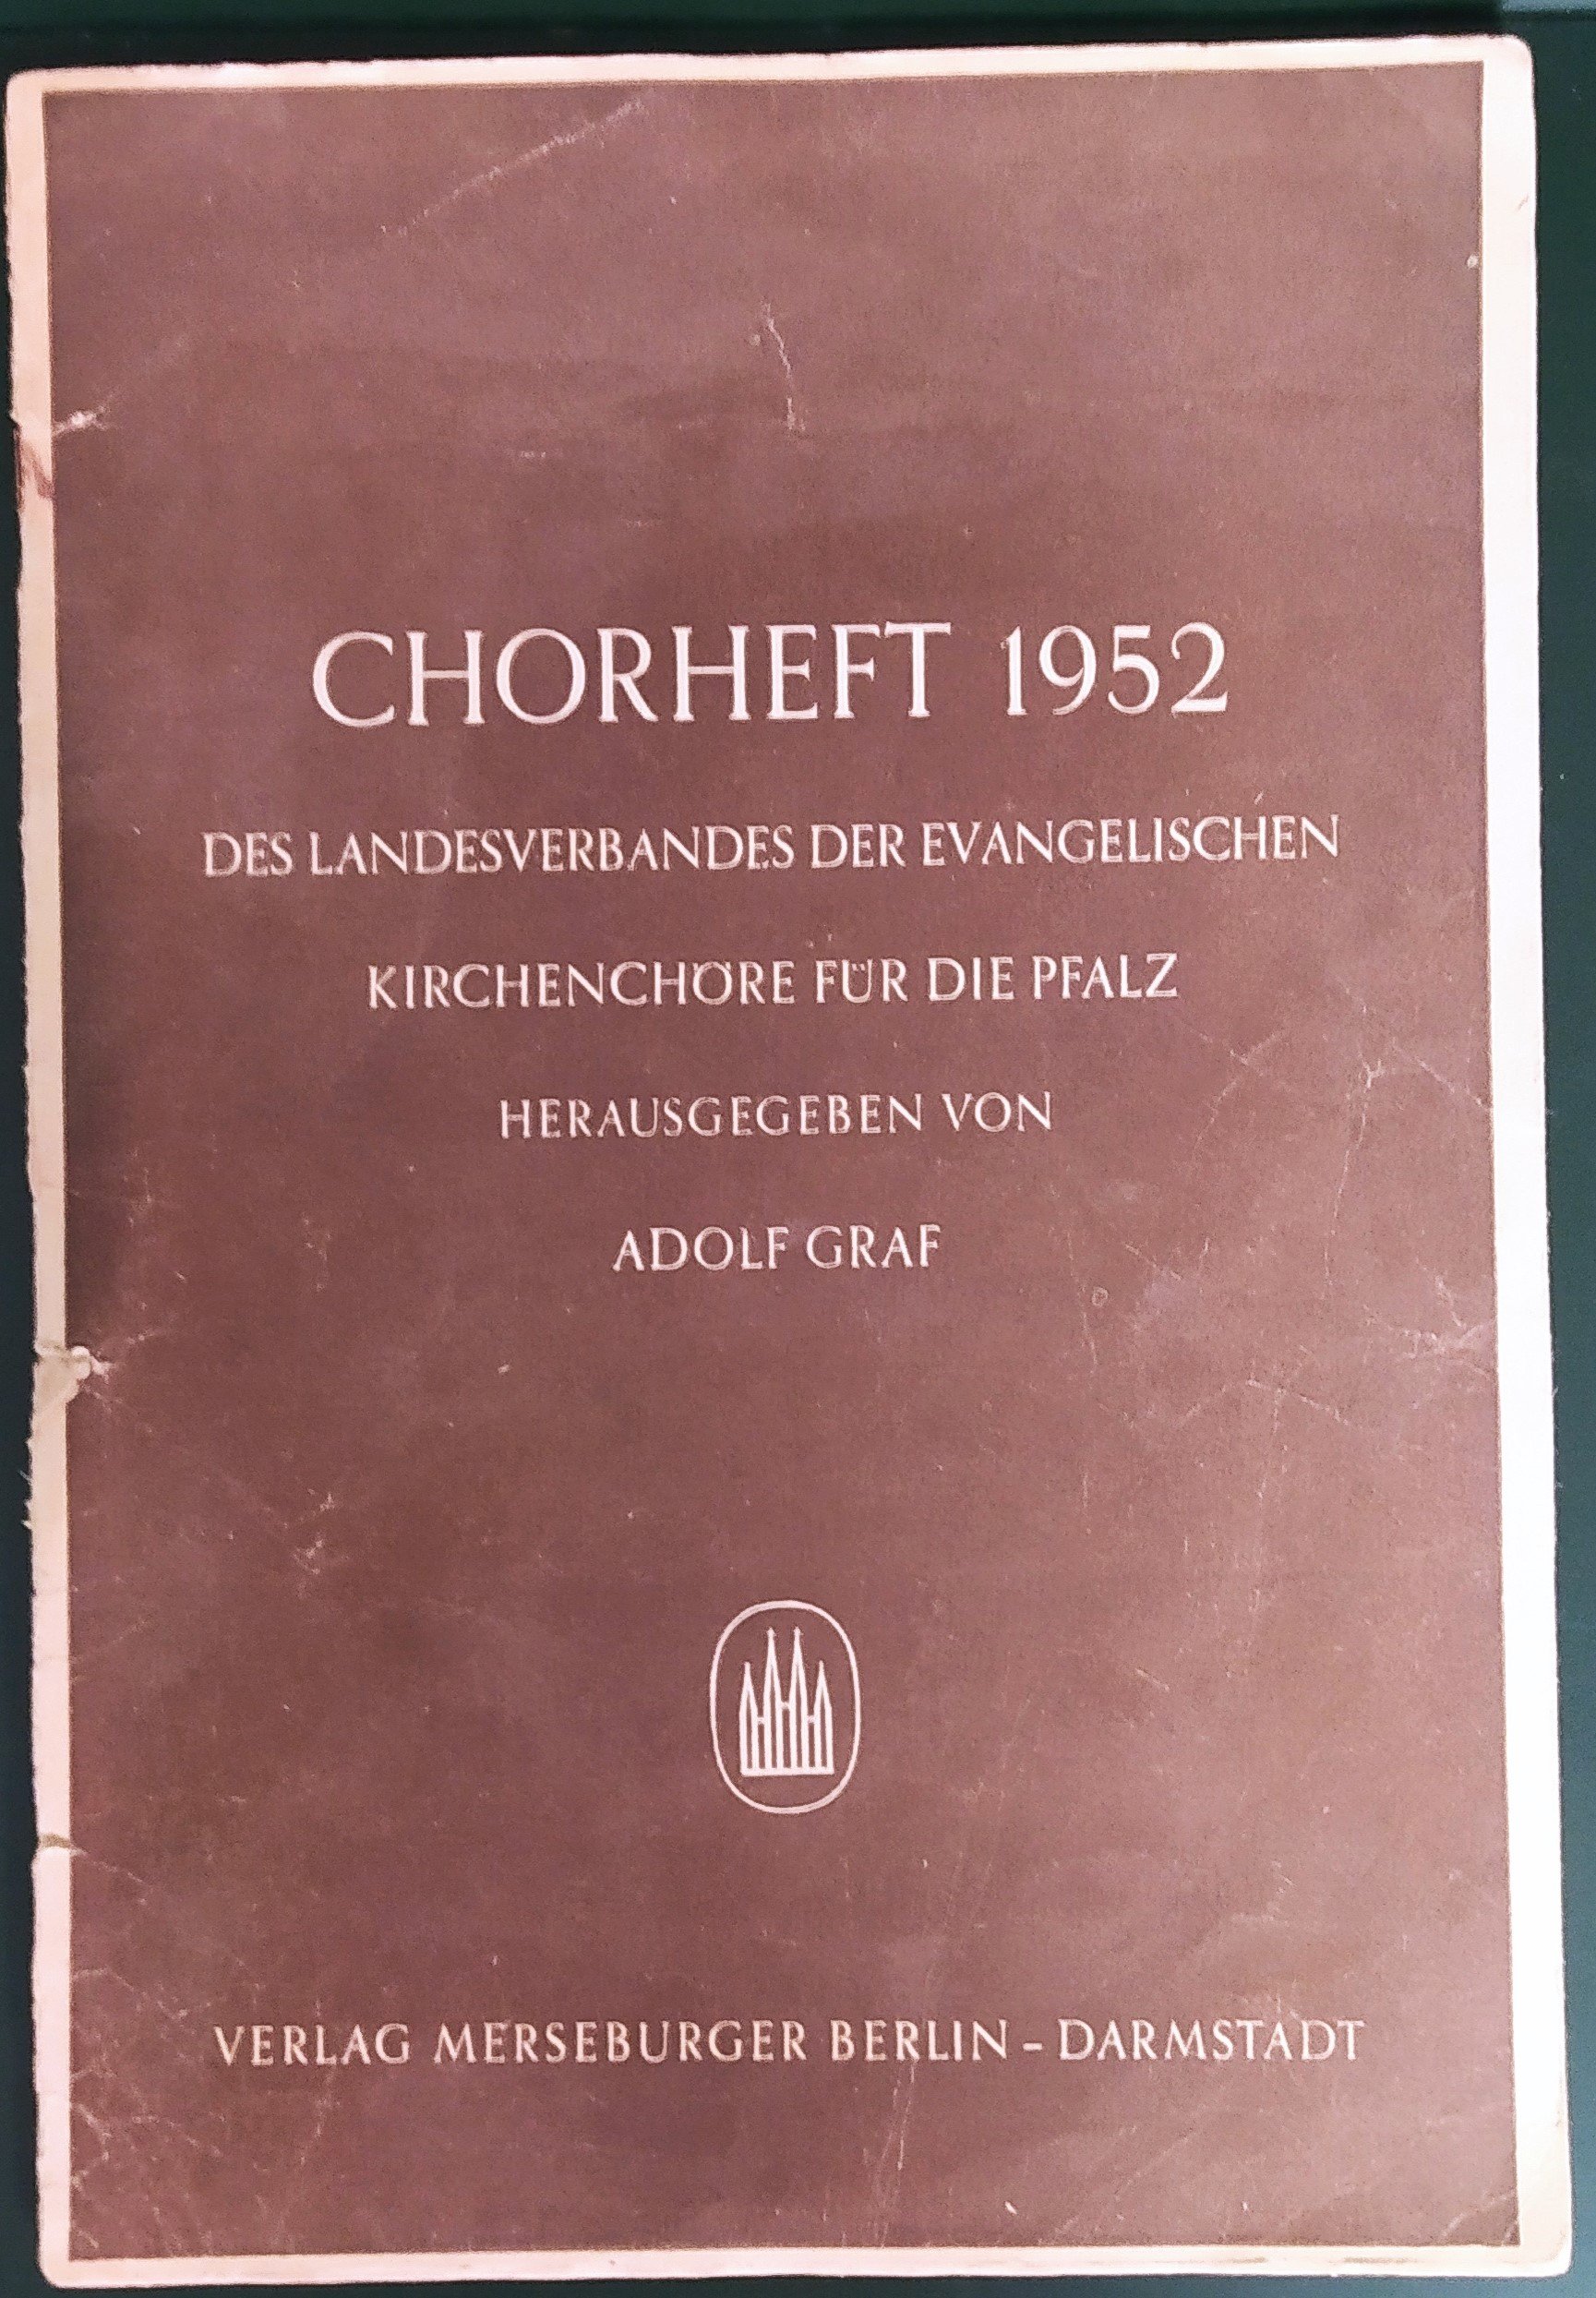 Chorheft 1952 (HKK CC BY-NC-SA)